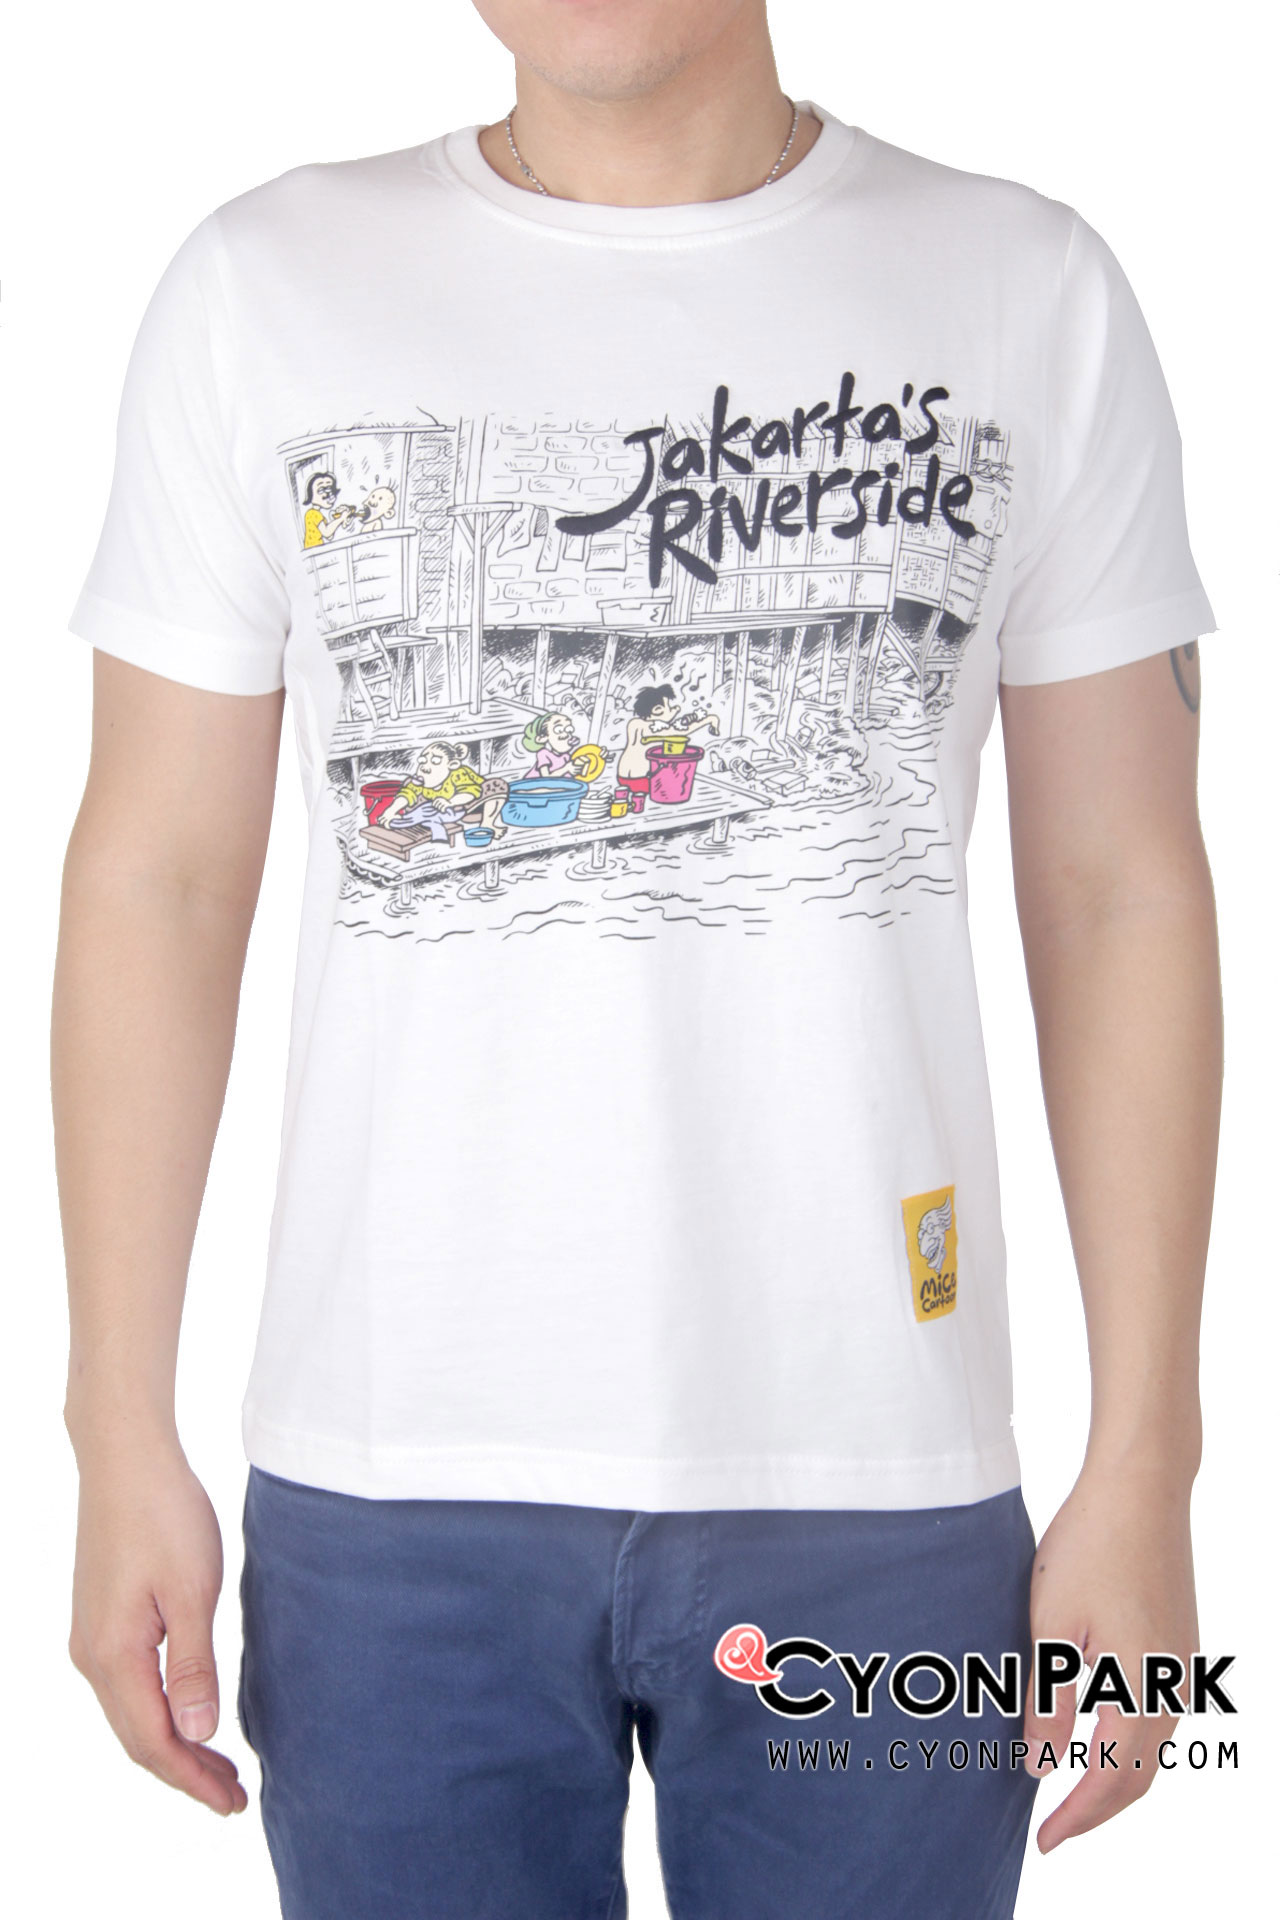 kaos-pria,-t-shirt,-baju-pria,made-in-indonesia,-kaos-buatan-dalam-negeri,kaos-komik-indonesia,-comical-tee-jakarta-riverside-white